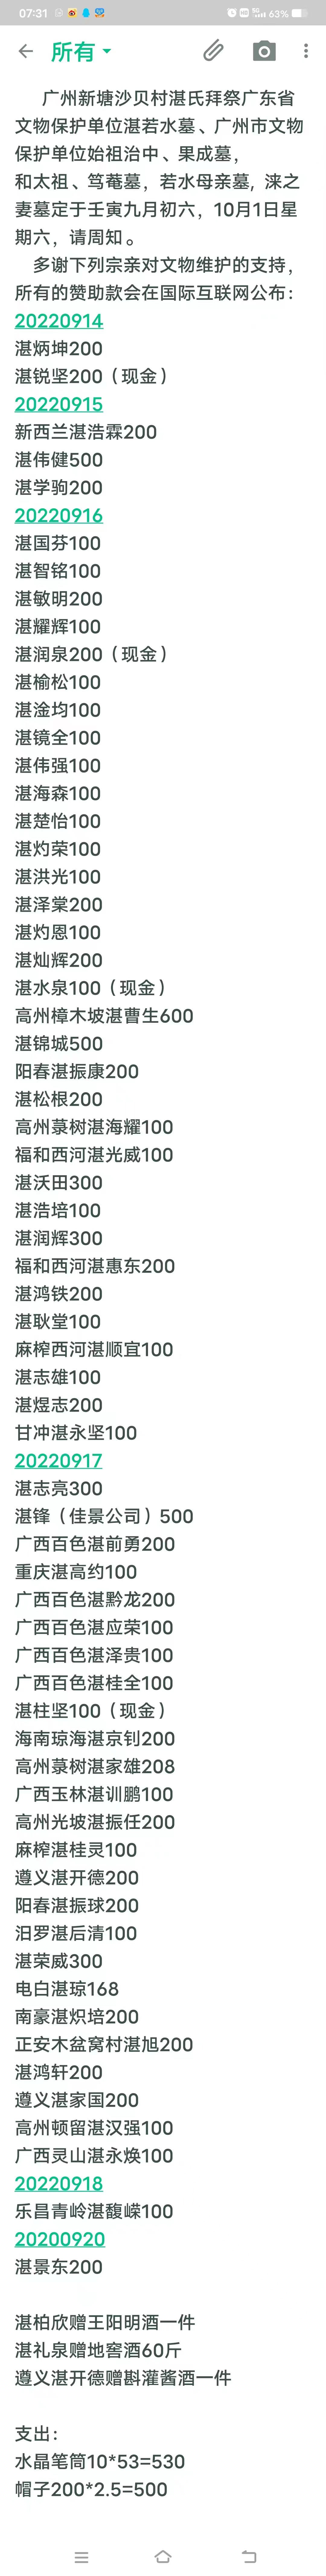 广州新塘沙贝村湛氏拜祭赞助人员名单